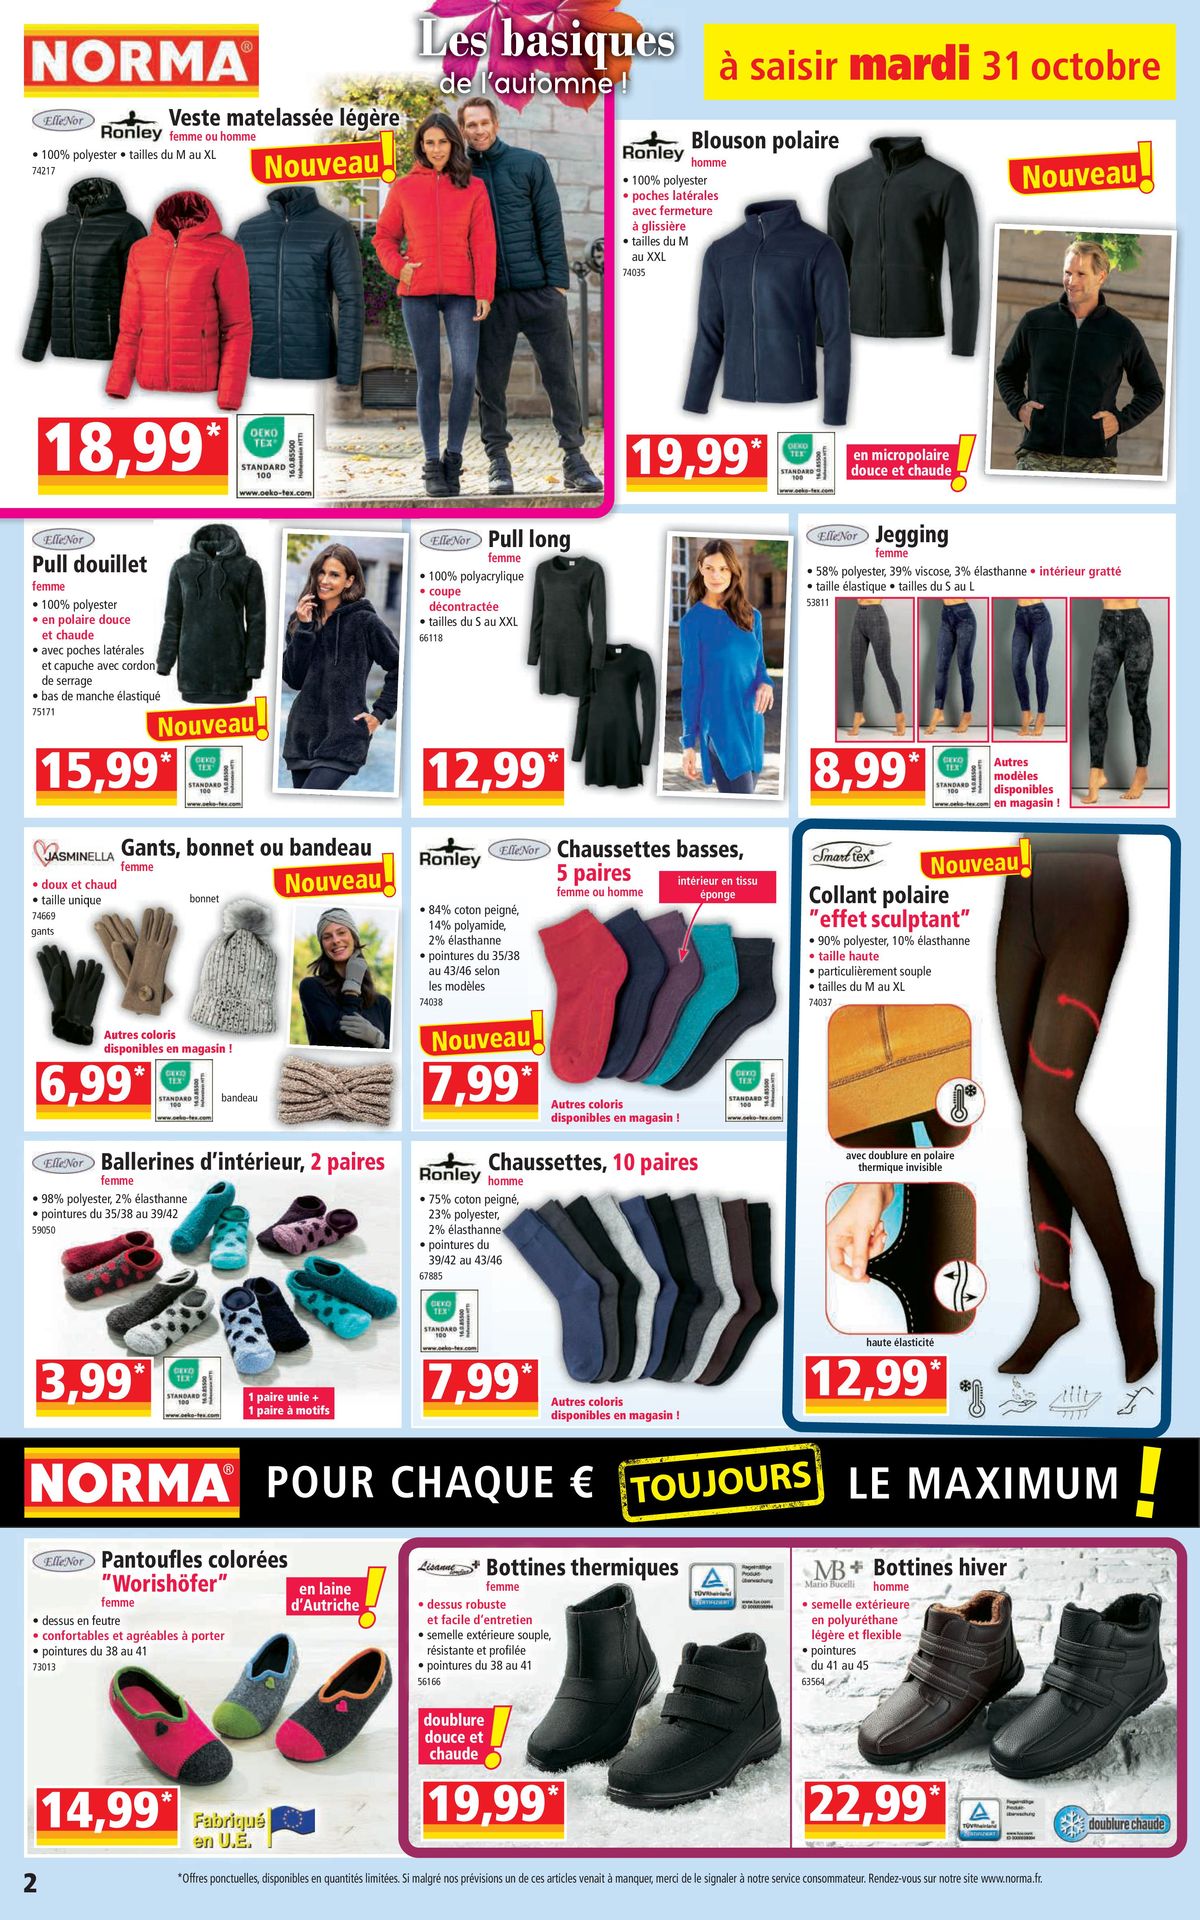 Catalogue Pour chaque €uro le maximum, page 00002